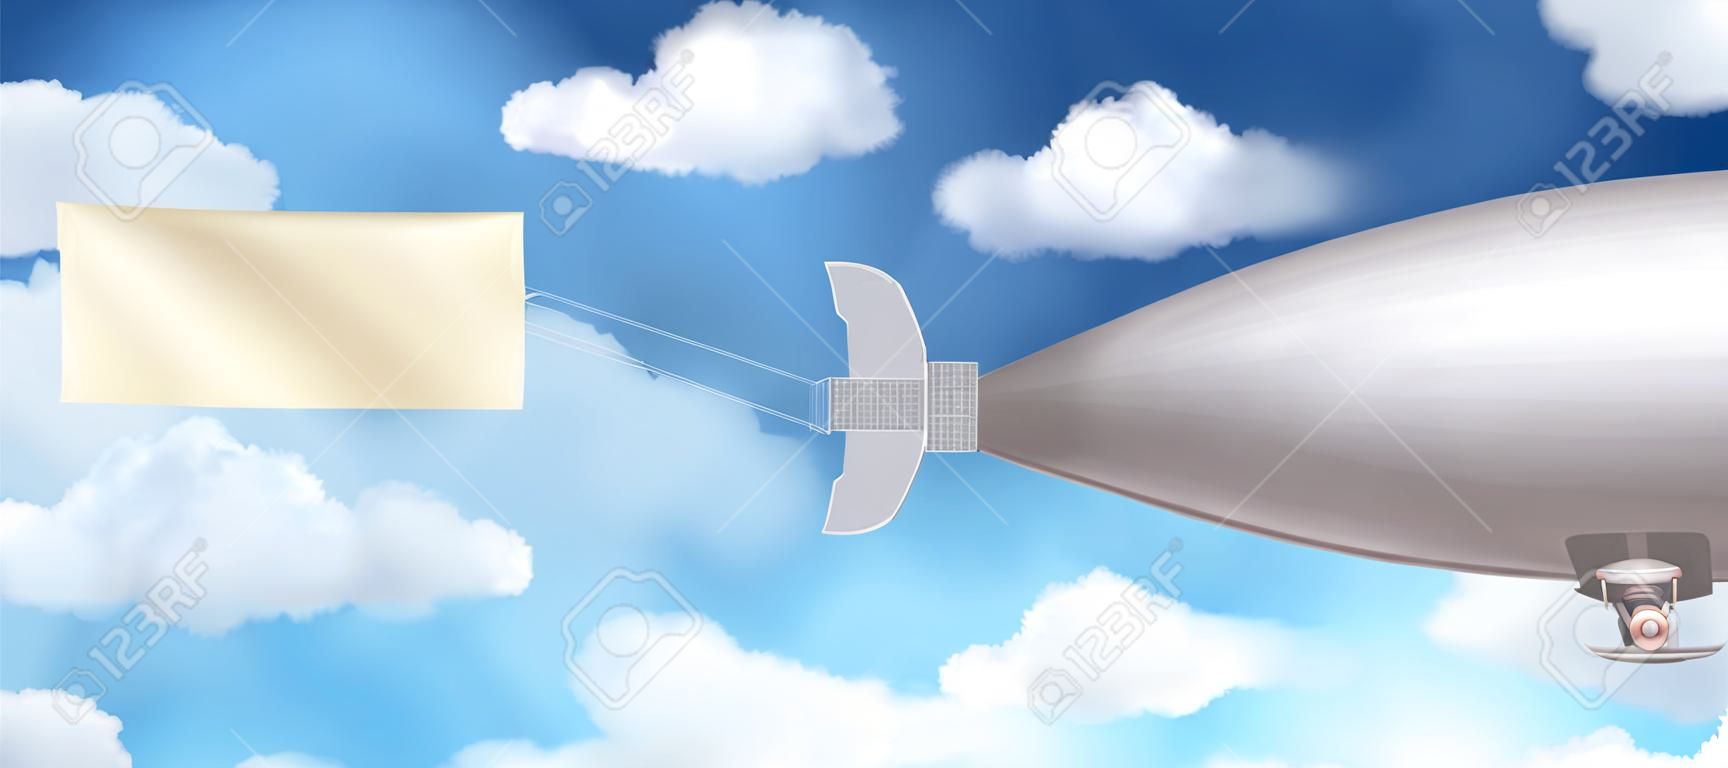 Dirigível dirigível composição realista com banner e nuvens no céu ilustração vetorial